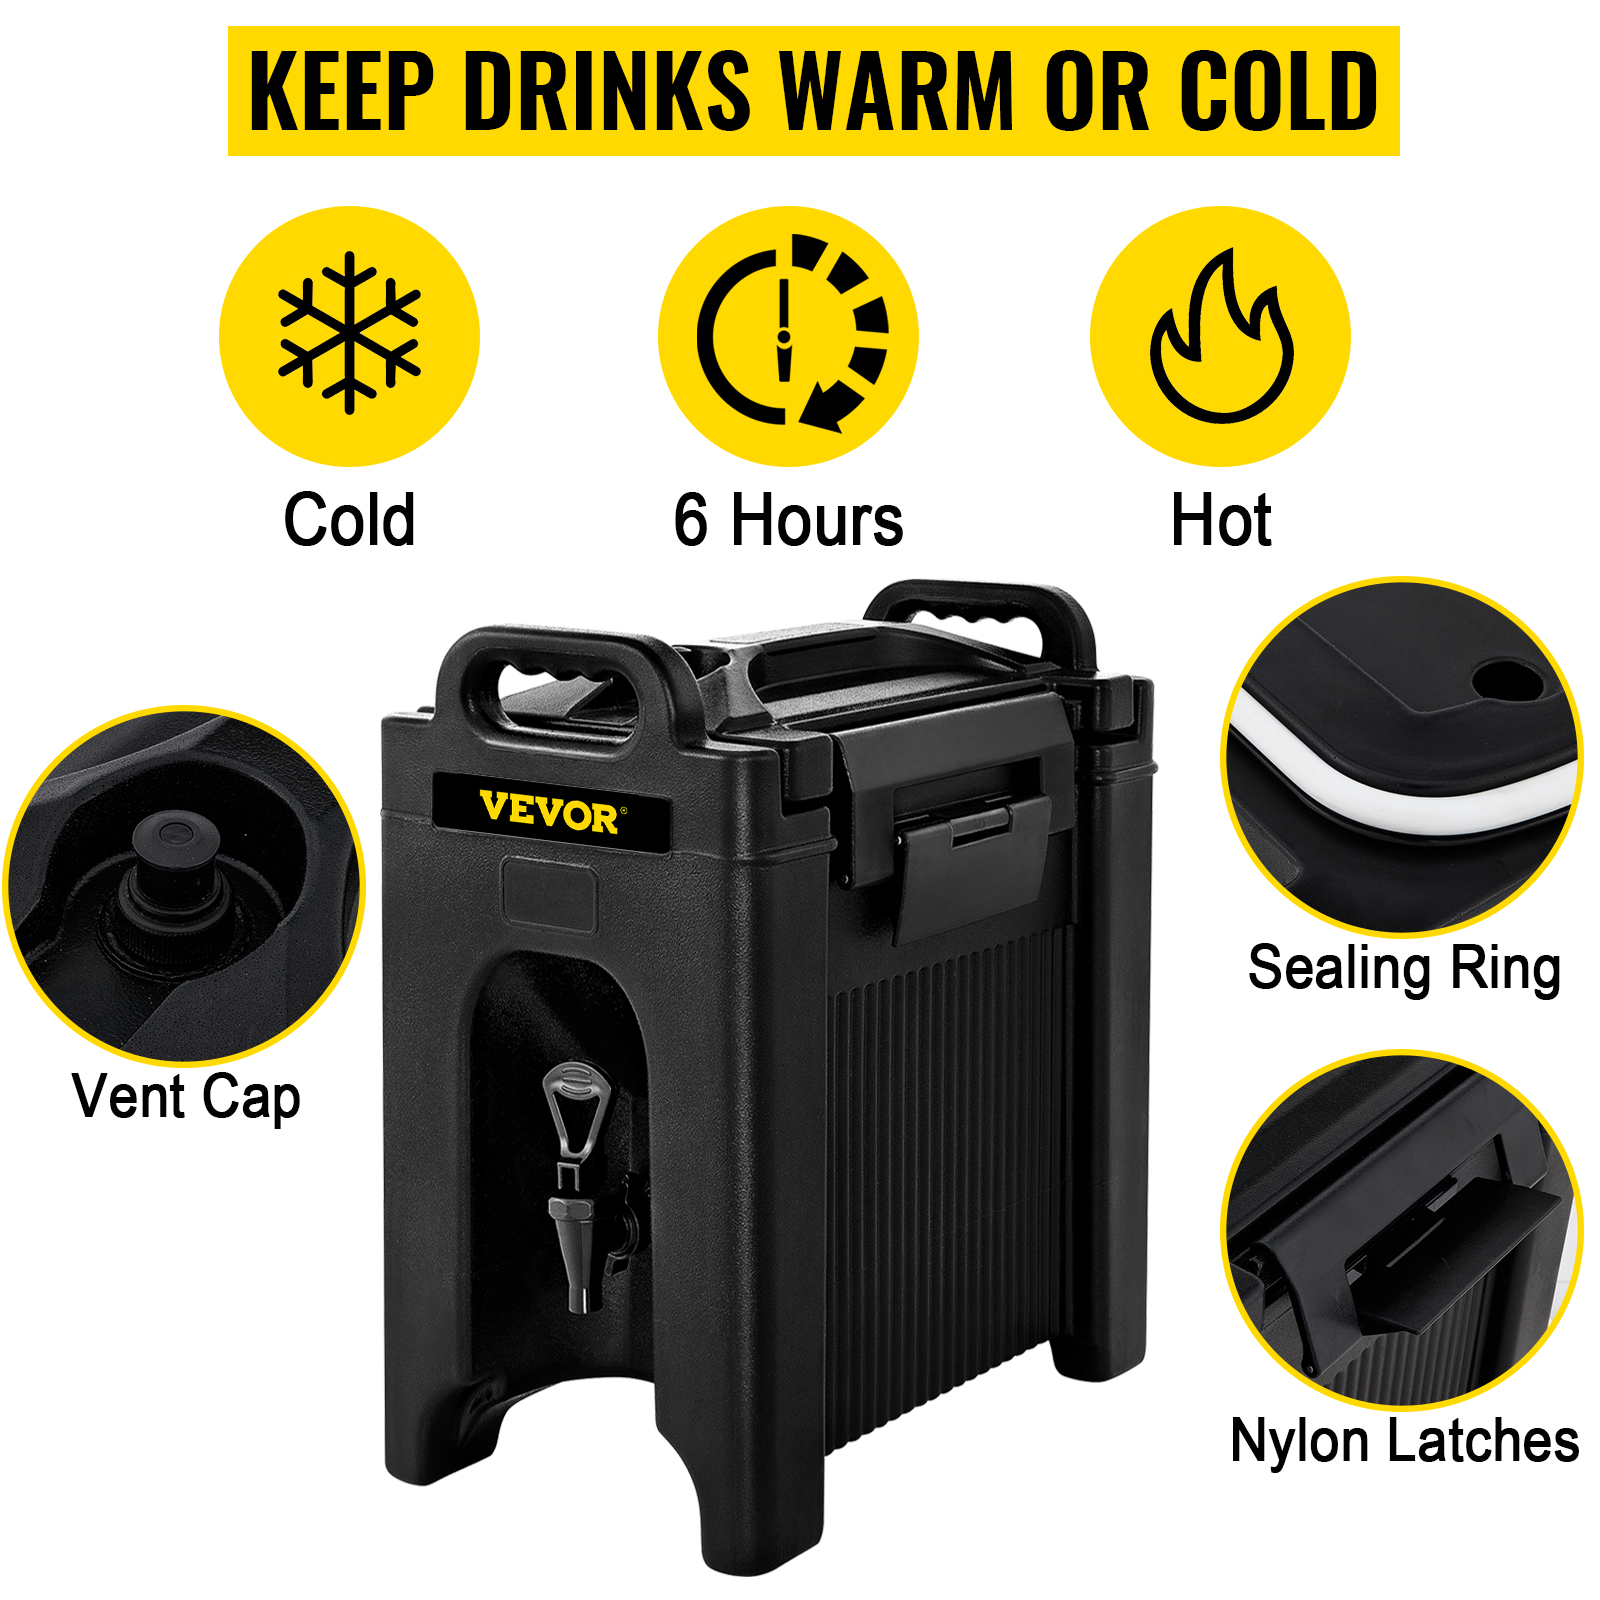 VEVOR Insulated Beverage Dispenser 10 Gal. Hot and Cold Beverage